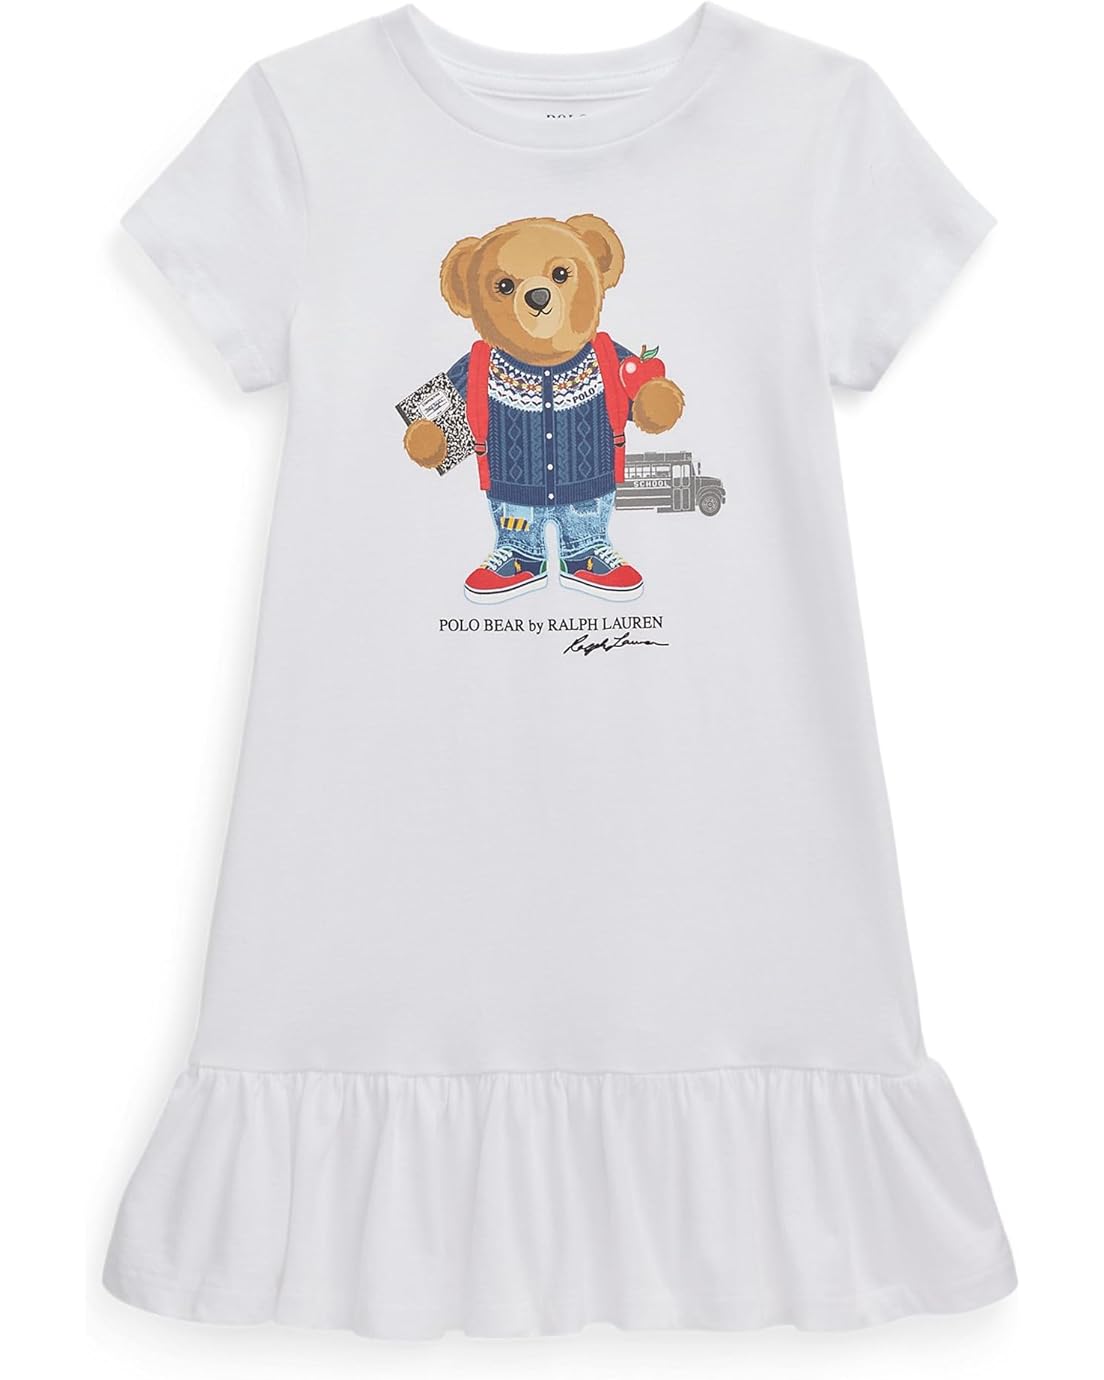 폴로 랄프로렌 Polo Ralph Lauren Kids Logo Cotton Jersey Tee Dress (Little Kids)